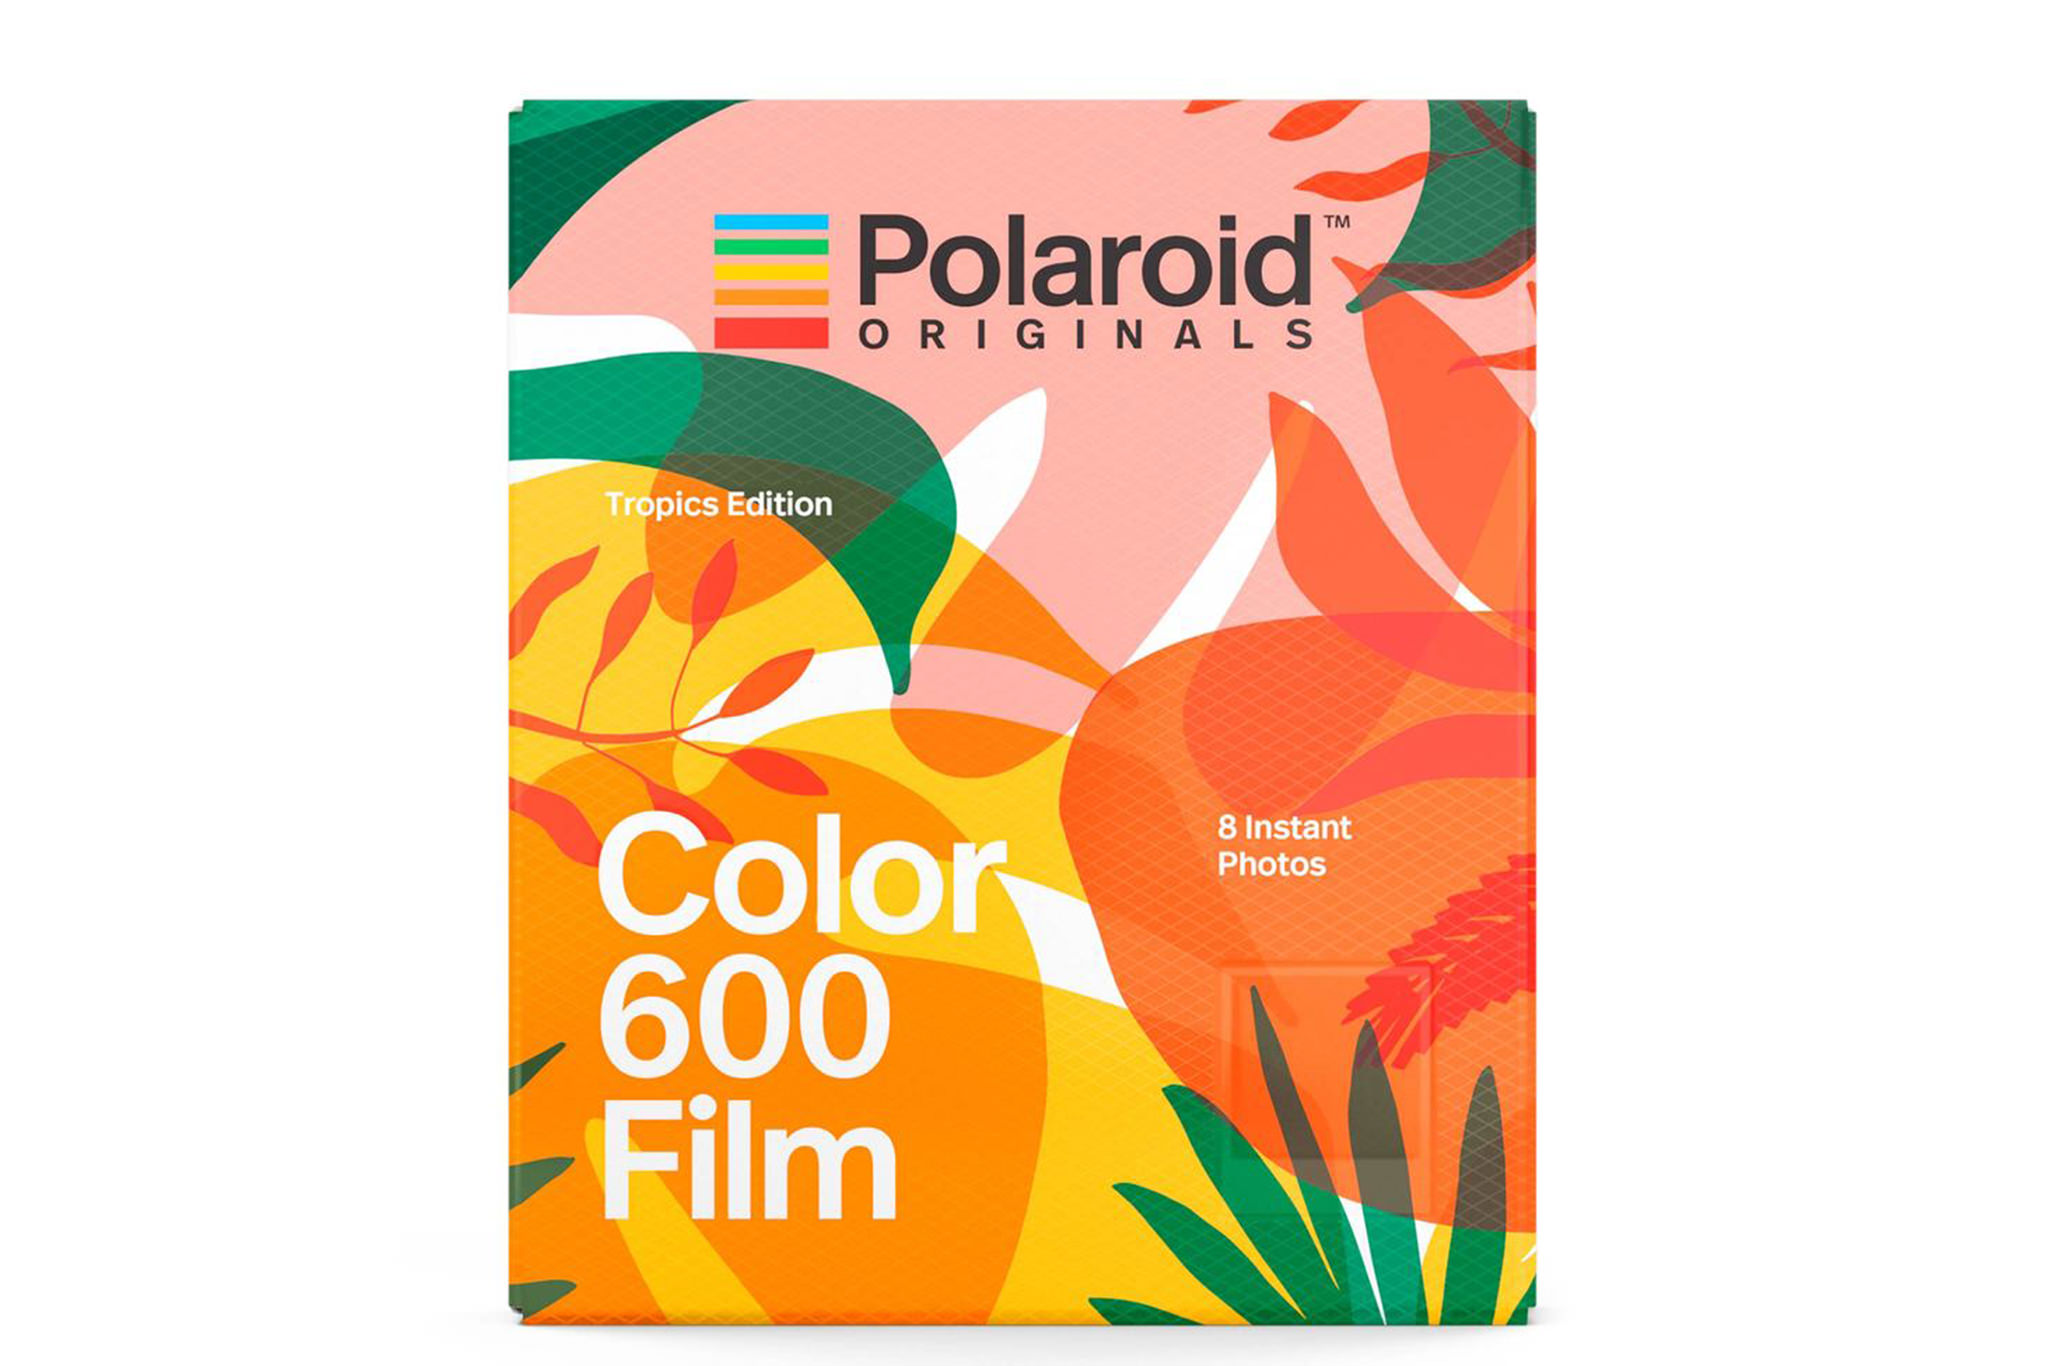 Polaroid Originals Color Film for 600 